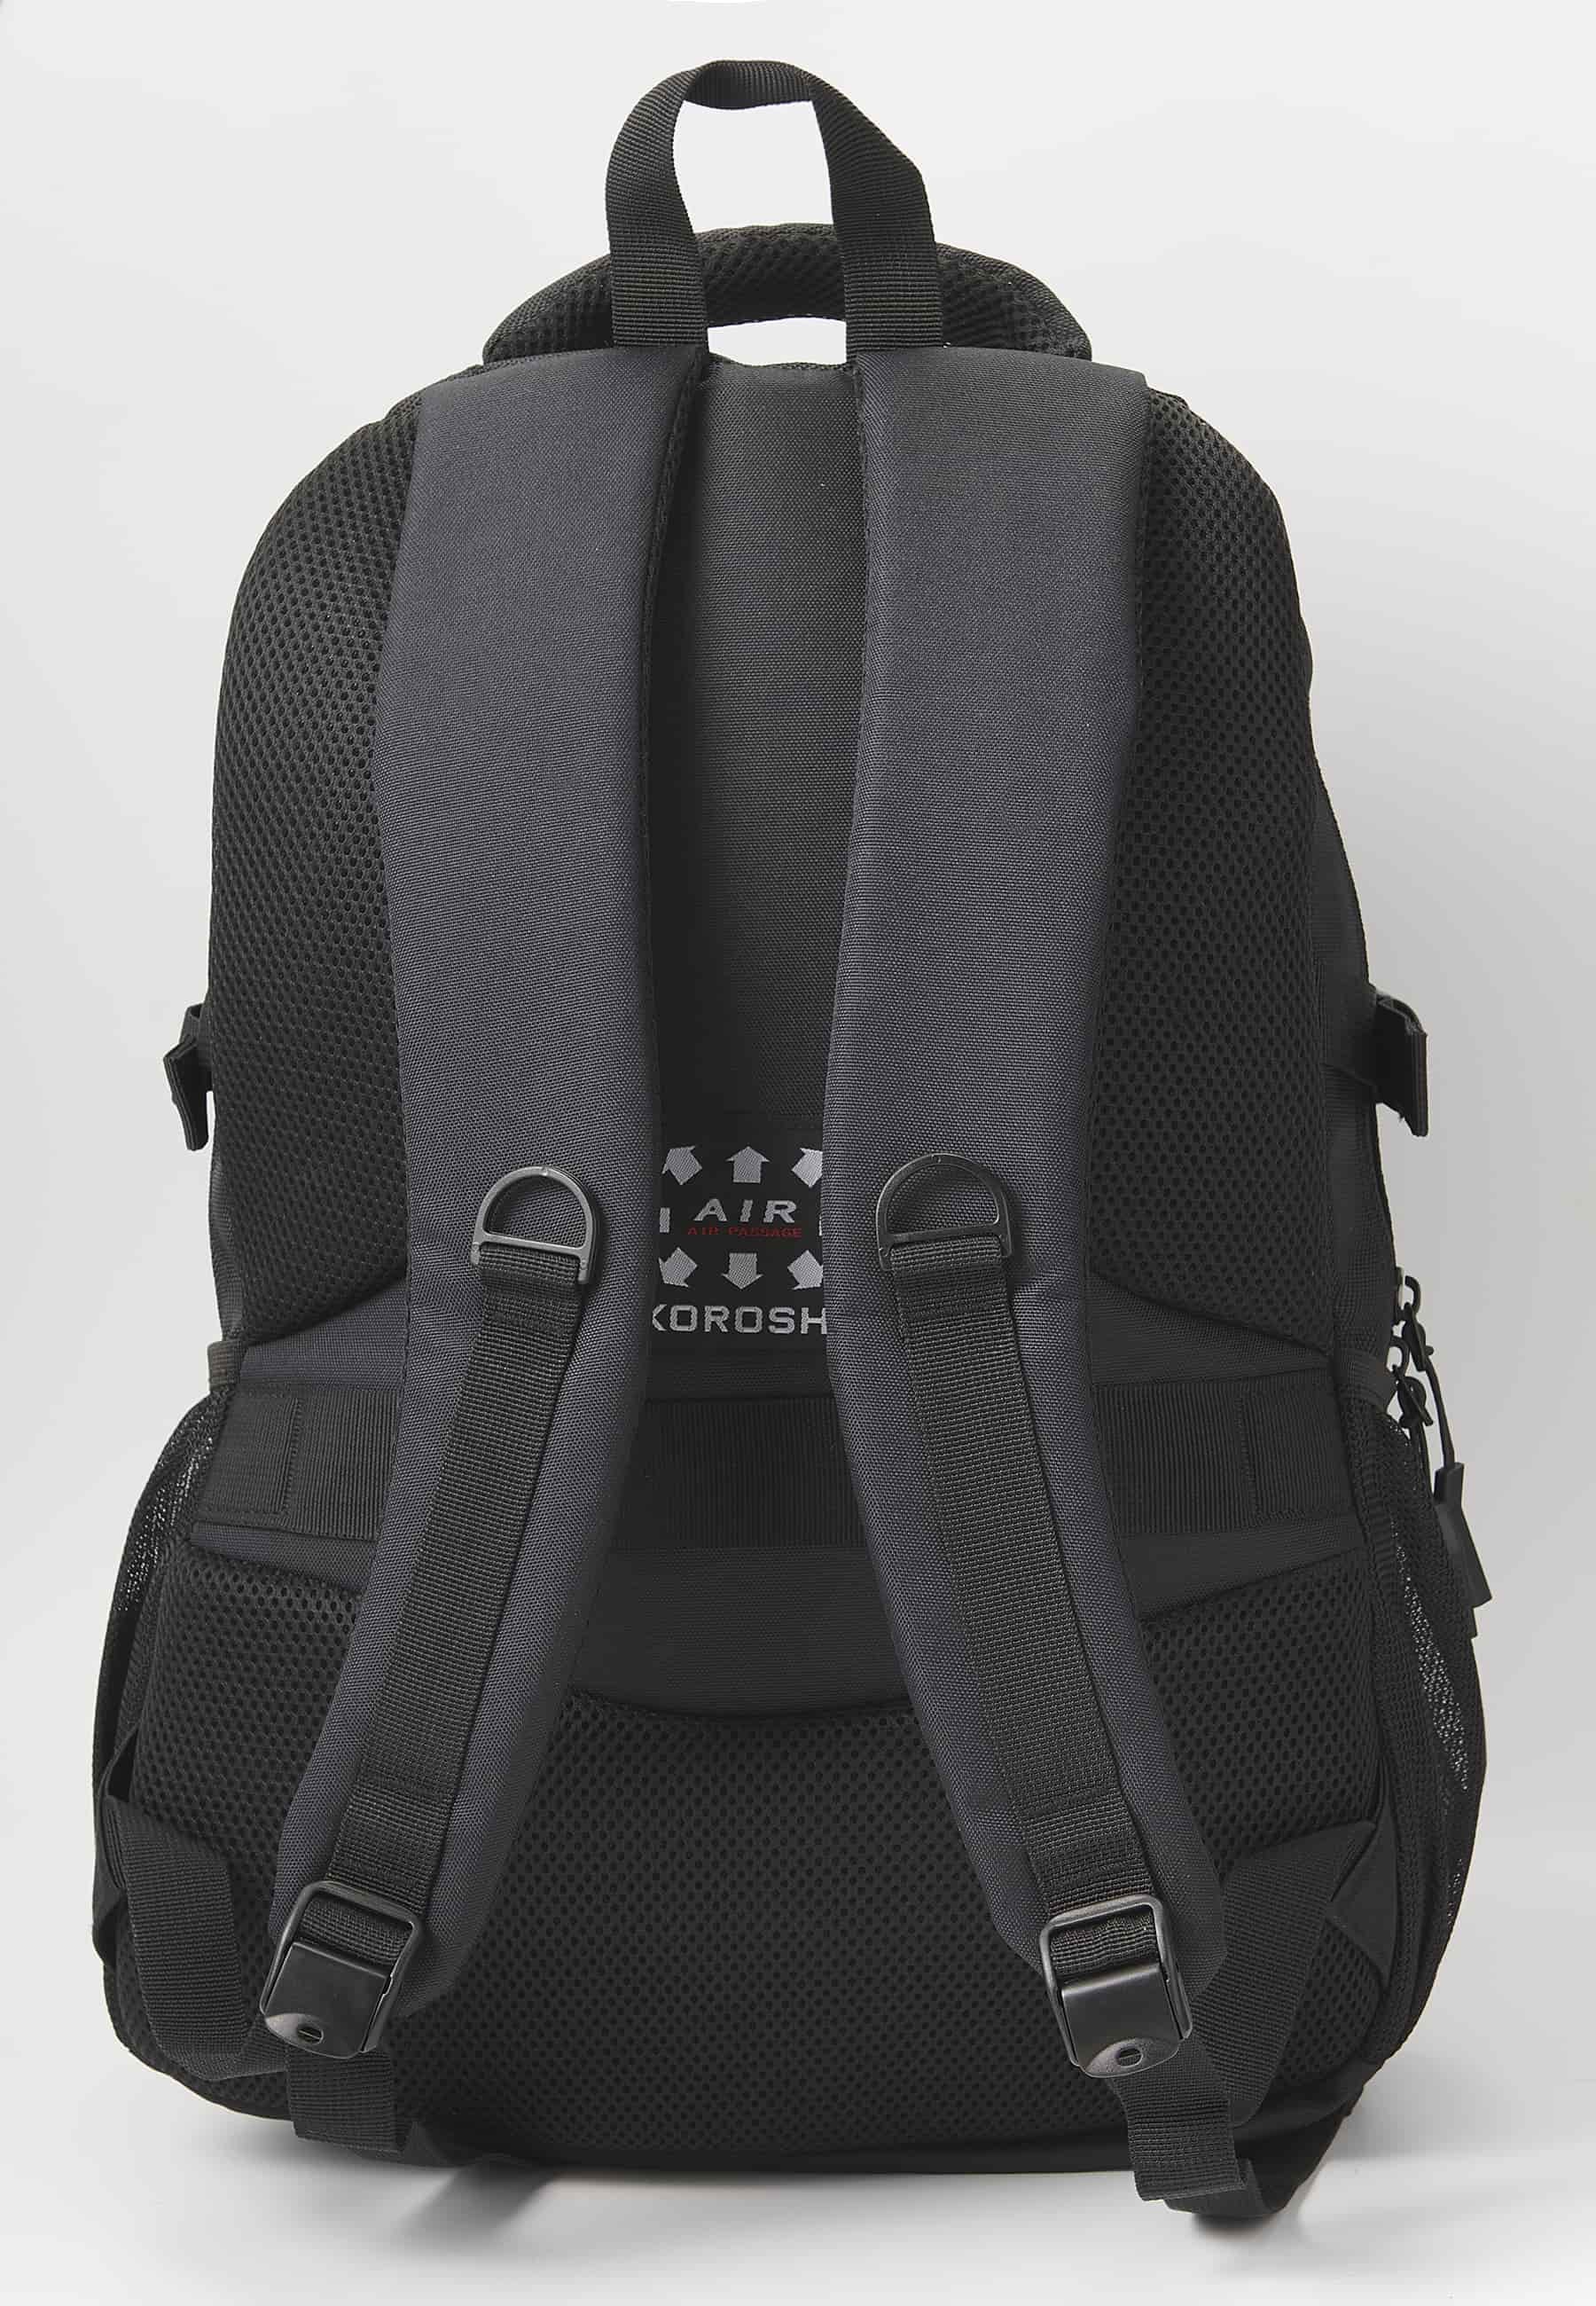 Koröshi-Rucksack mit drei Reißverschlussfächern, eines für einen Laptop, und schwarzen Innentaschen